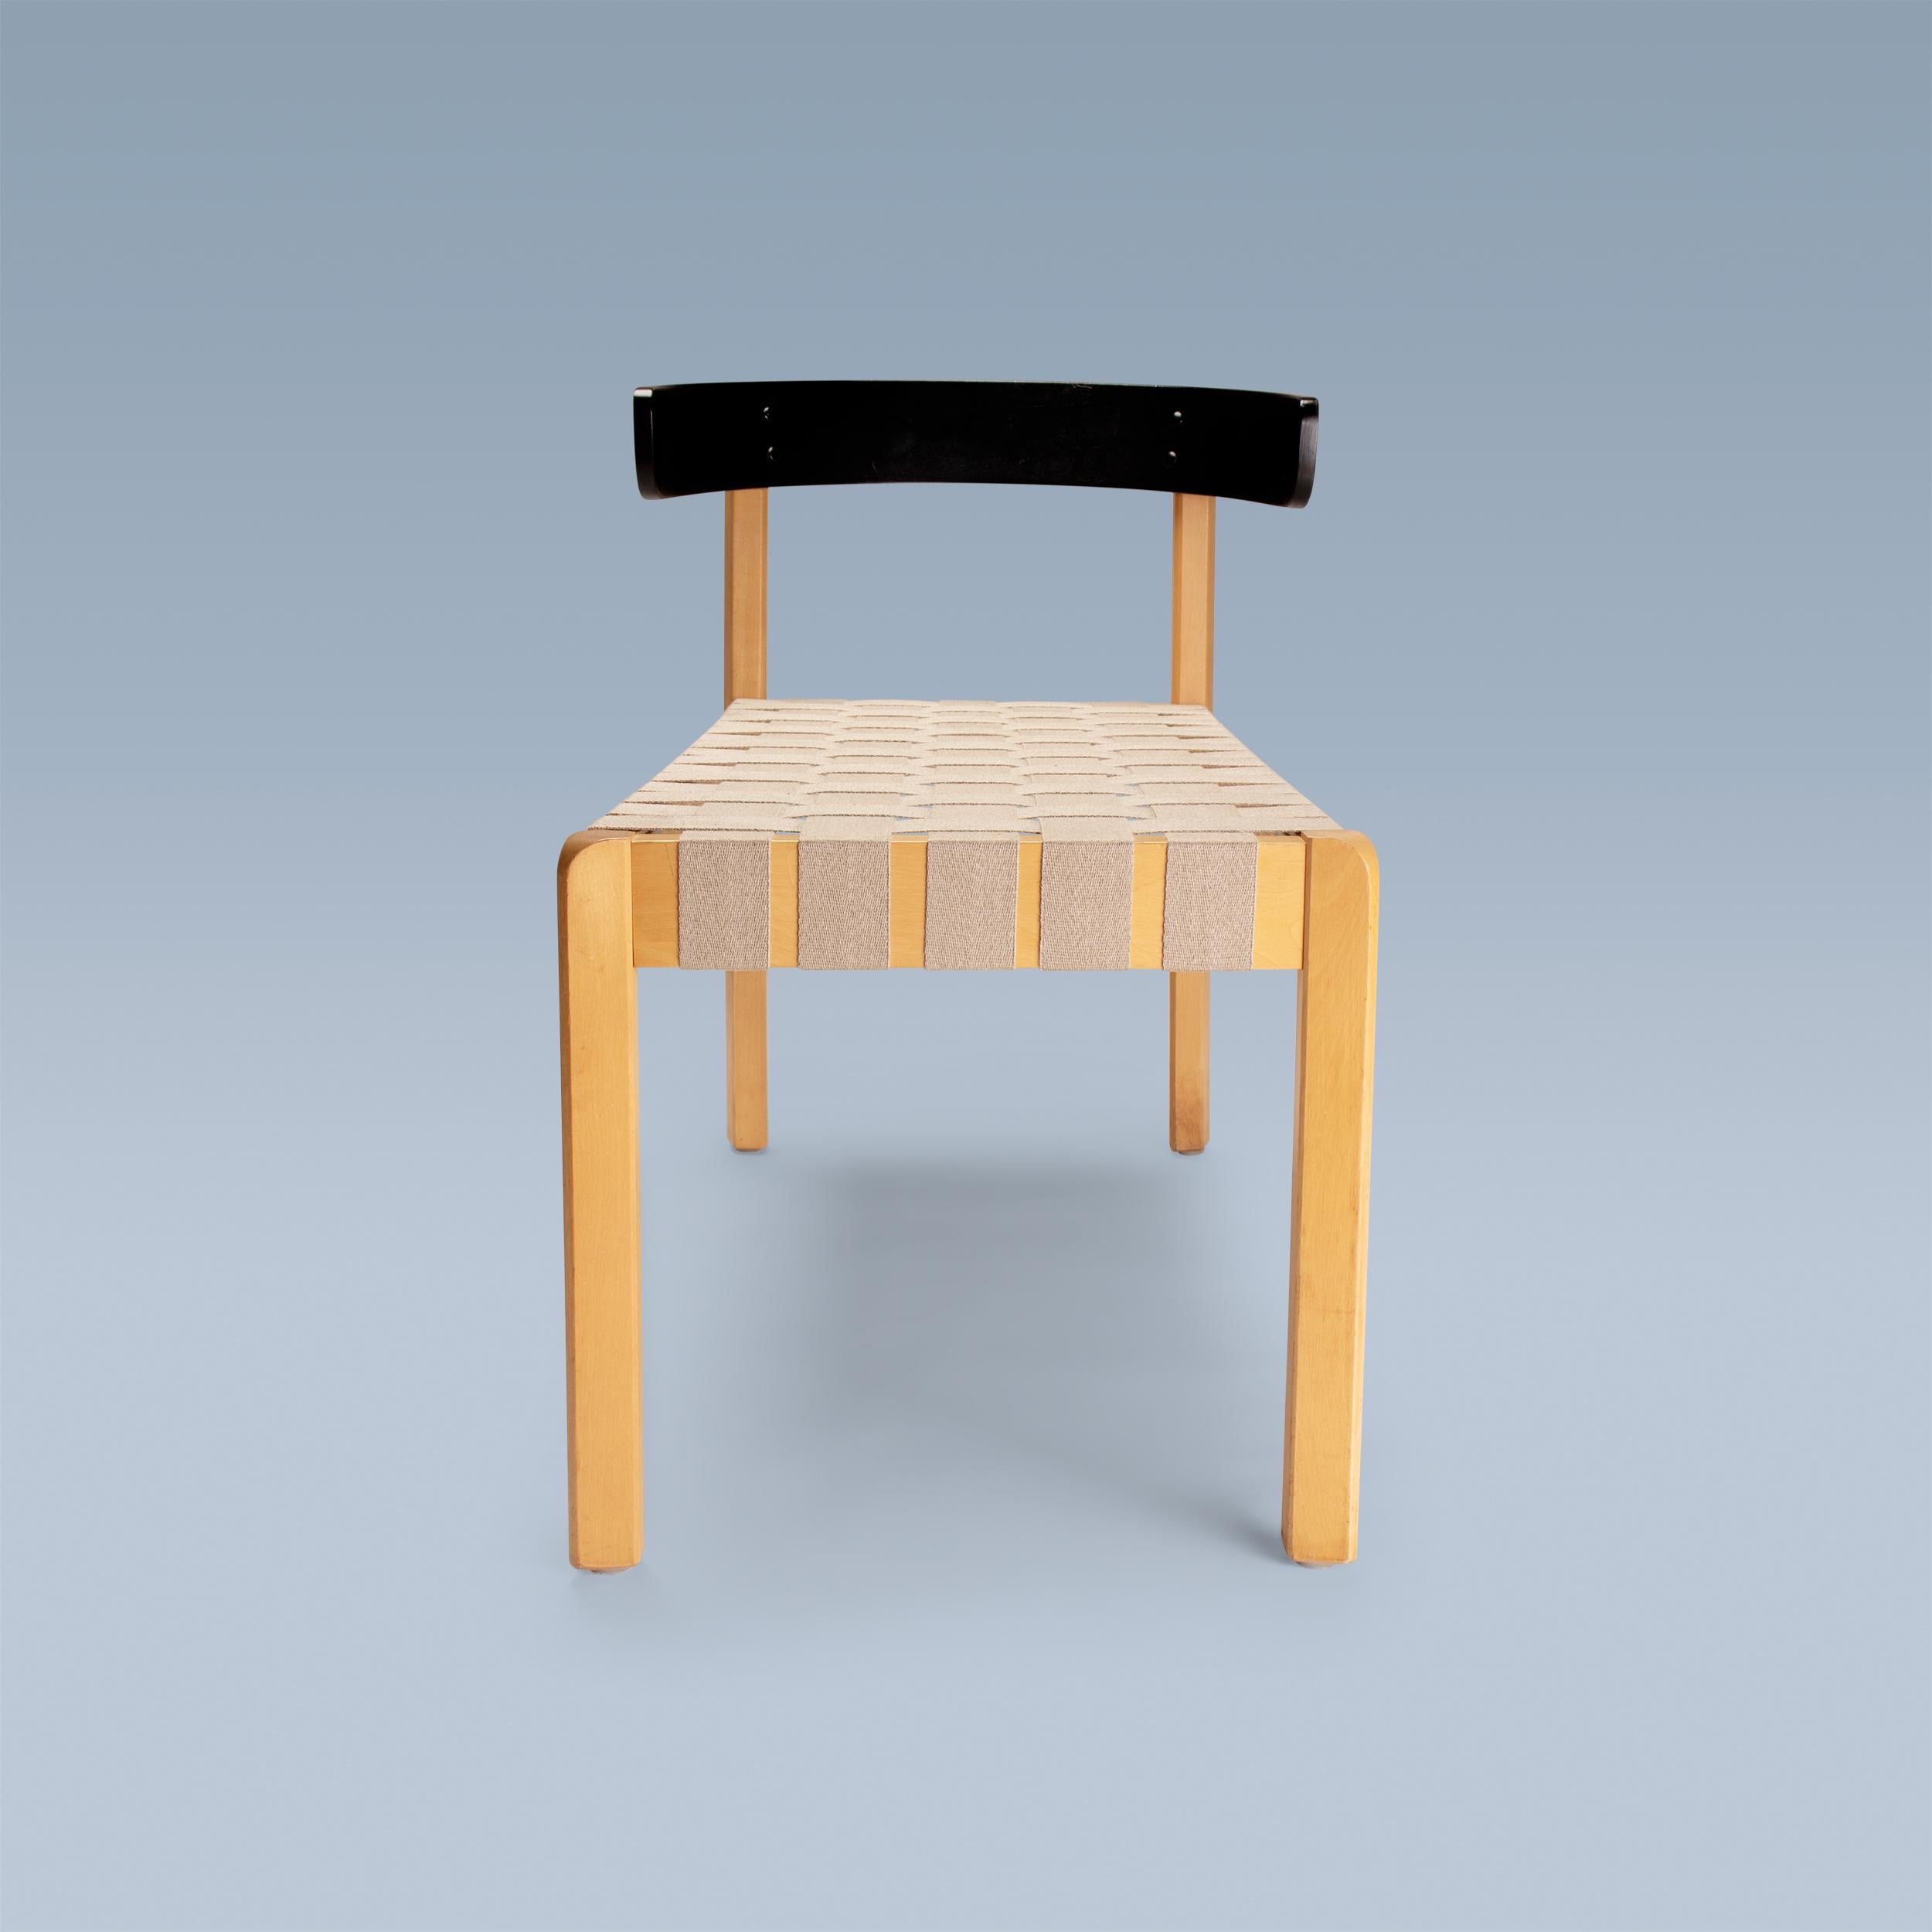 Diese einzigartige Stuhlbank von Jørgen Gammelgaard (1938-1991) wurde um 1983 als Prototyp für das Königliche Nationaltheater in Kopenhagen, Dänemark, angefertigt, als die Architekten Eva und Nils Koppel das neue Schauspielerfoyer als Teil der